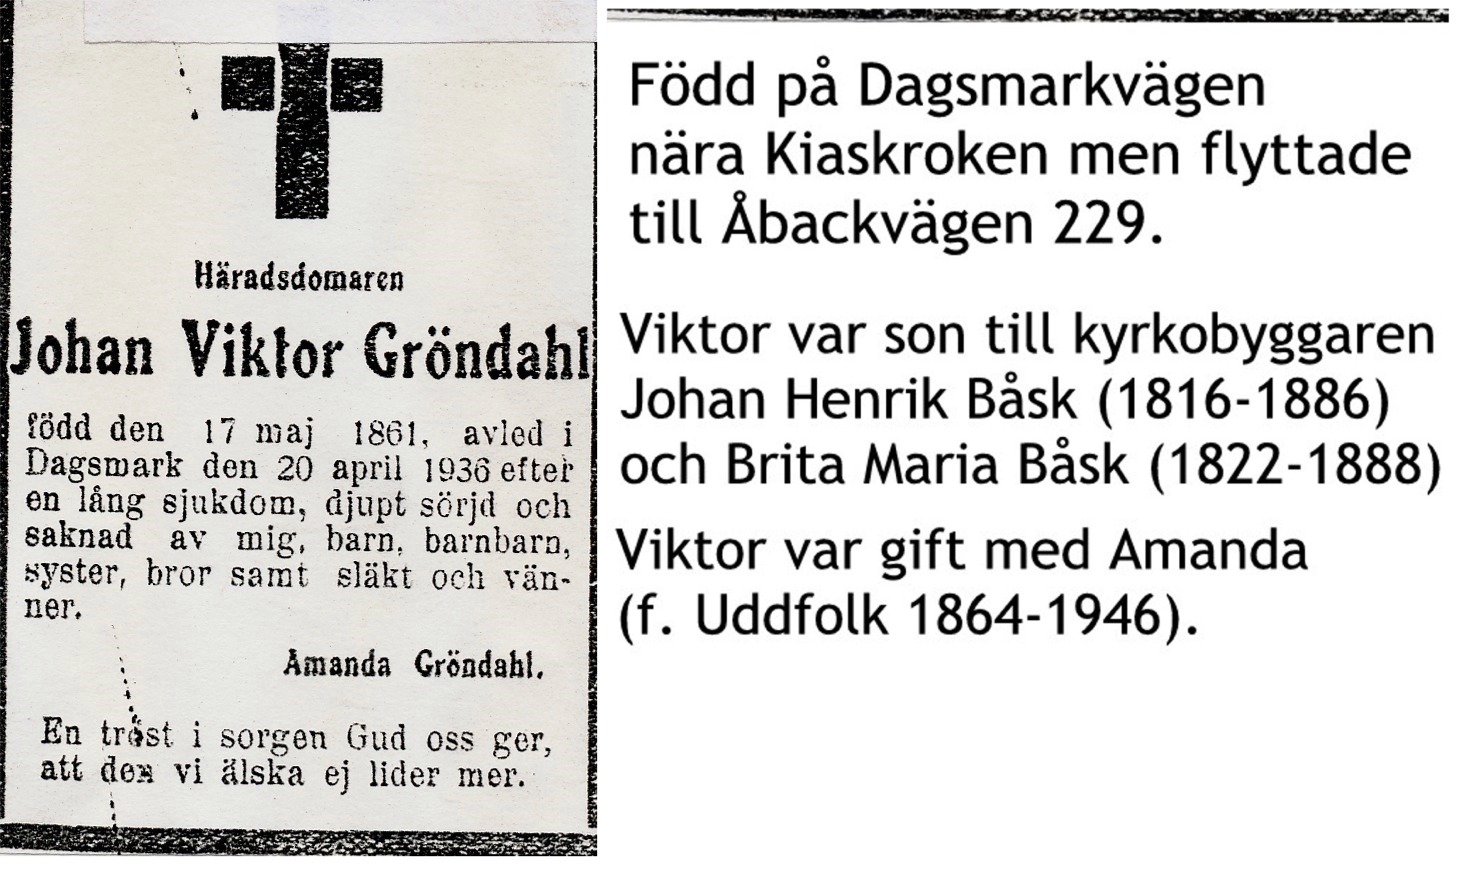 Gröndahl Johan Viktor häradsdomare